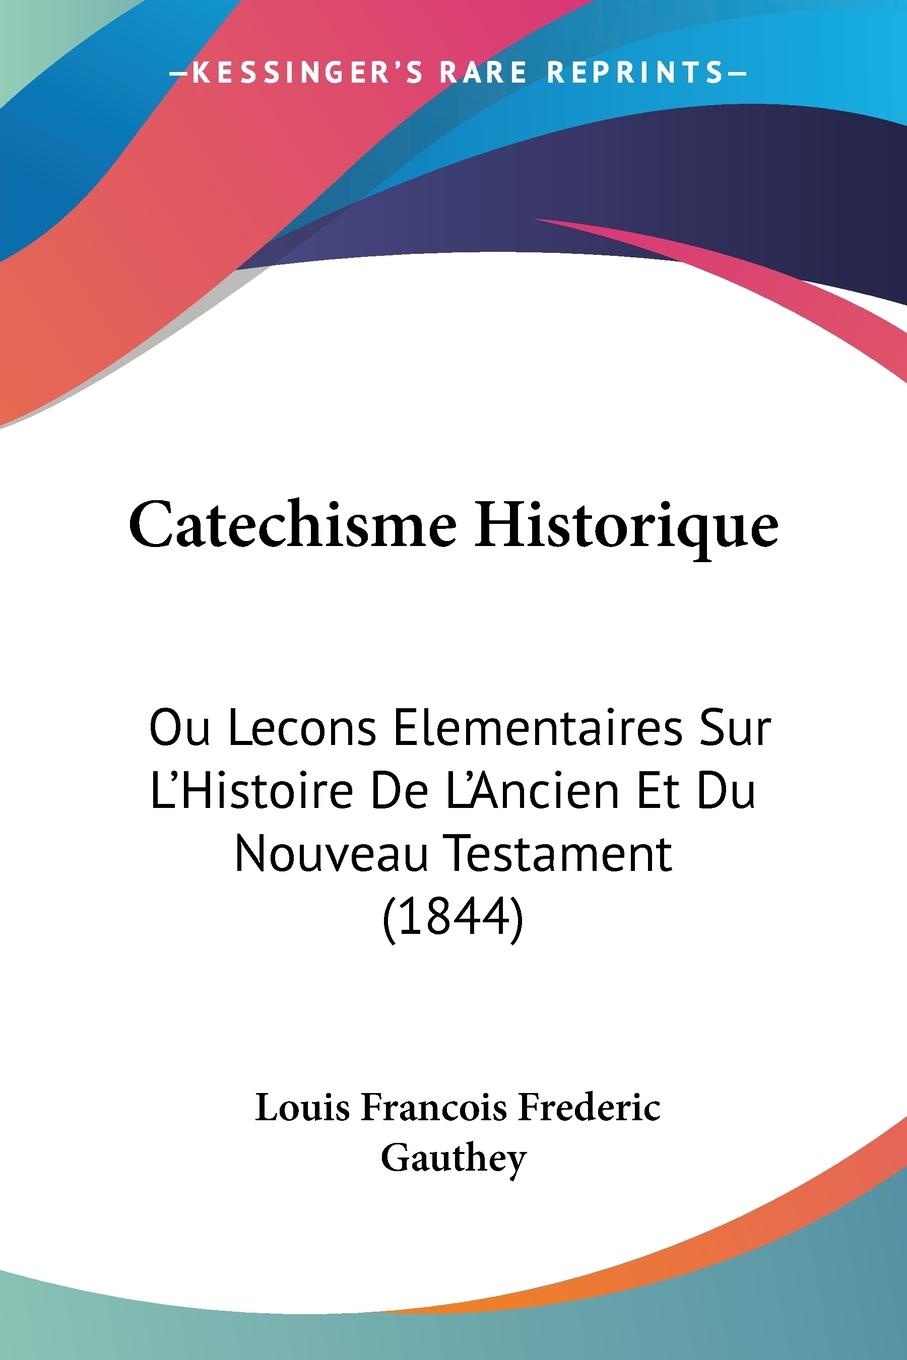 Catechisme Historique - Gauthey, Louis Francois Frederic